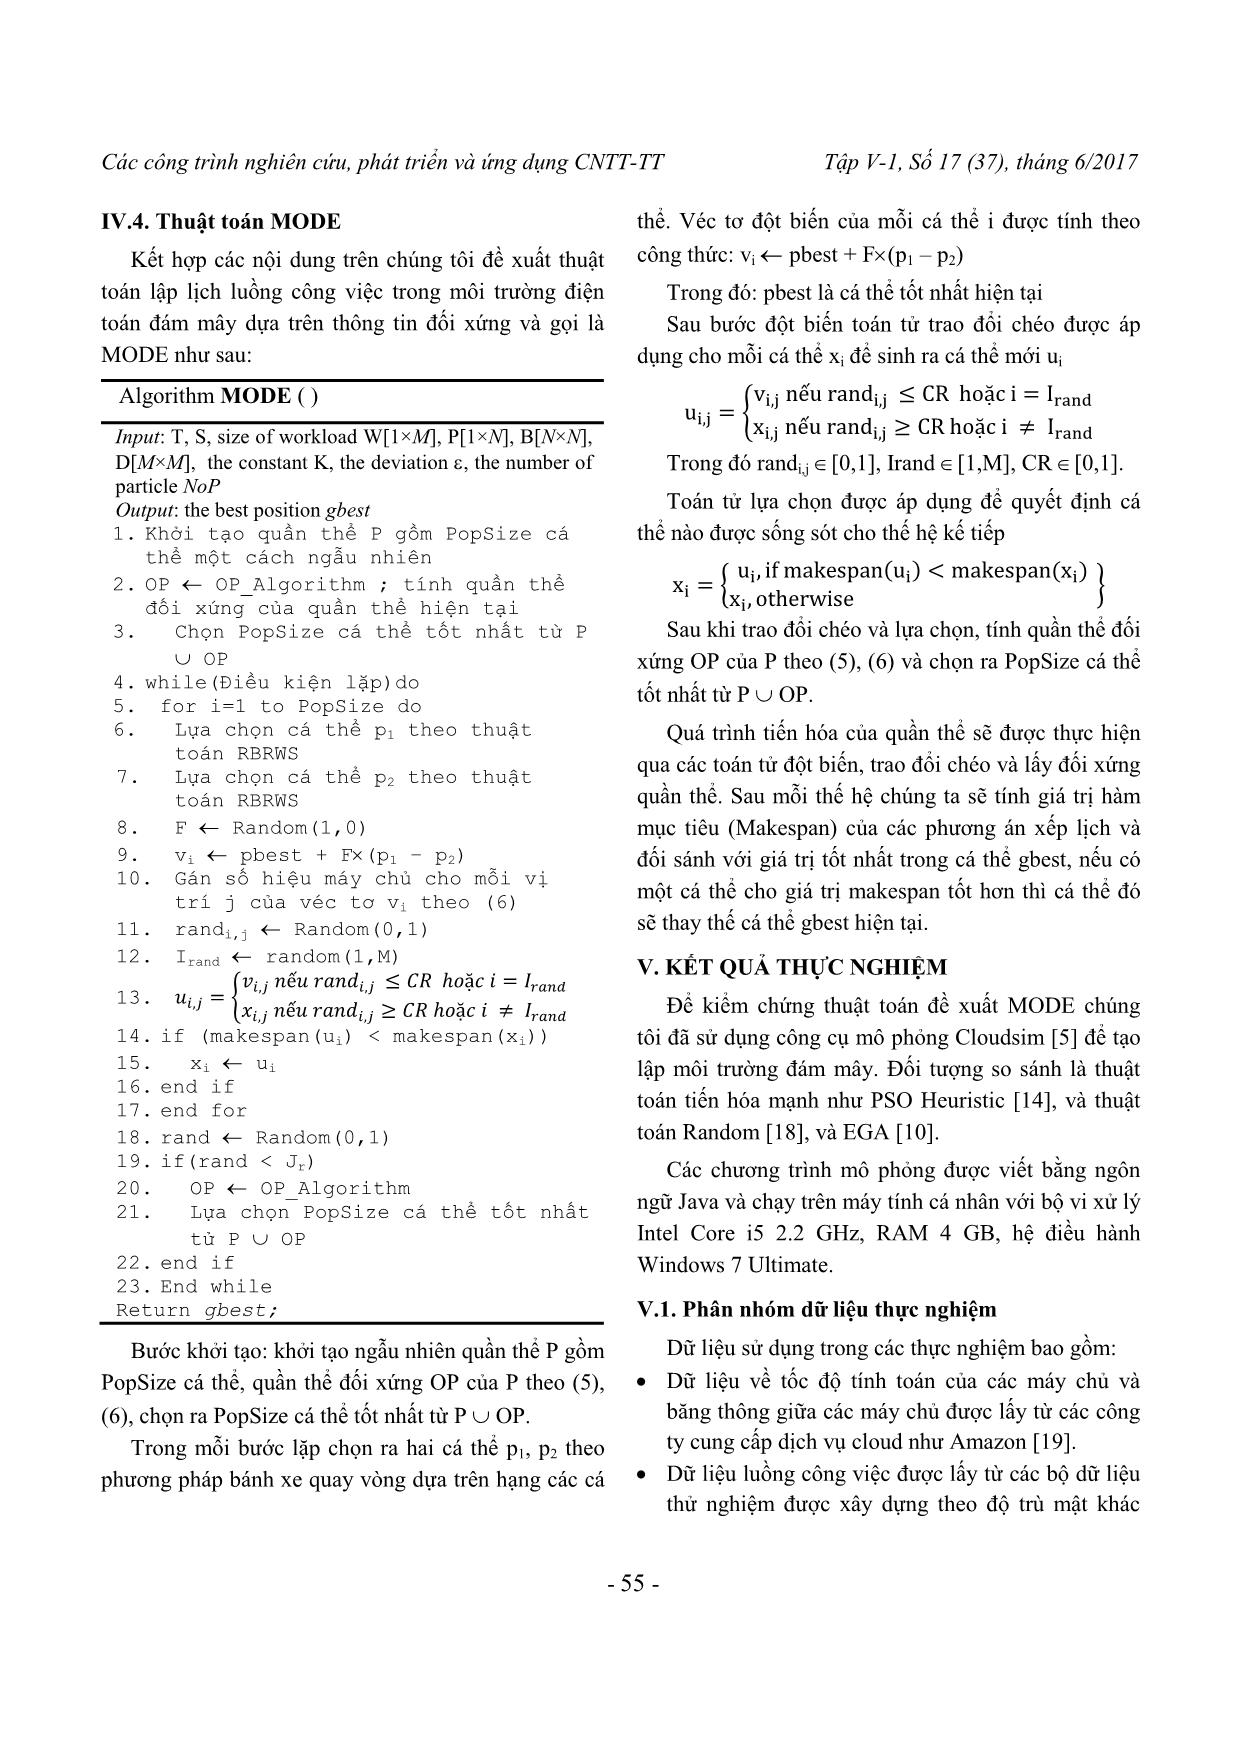 Thuận toán MODE giải bài toán lập lịch luồng công việc trang 5